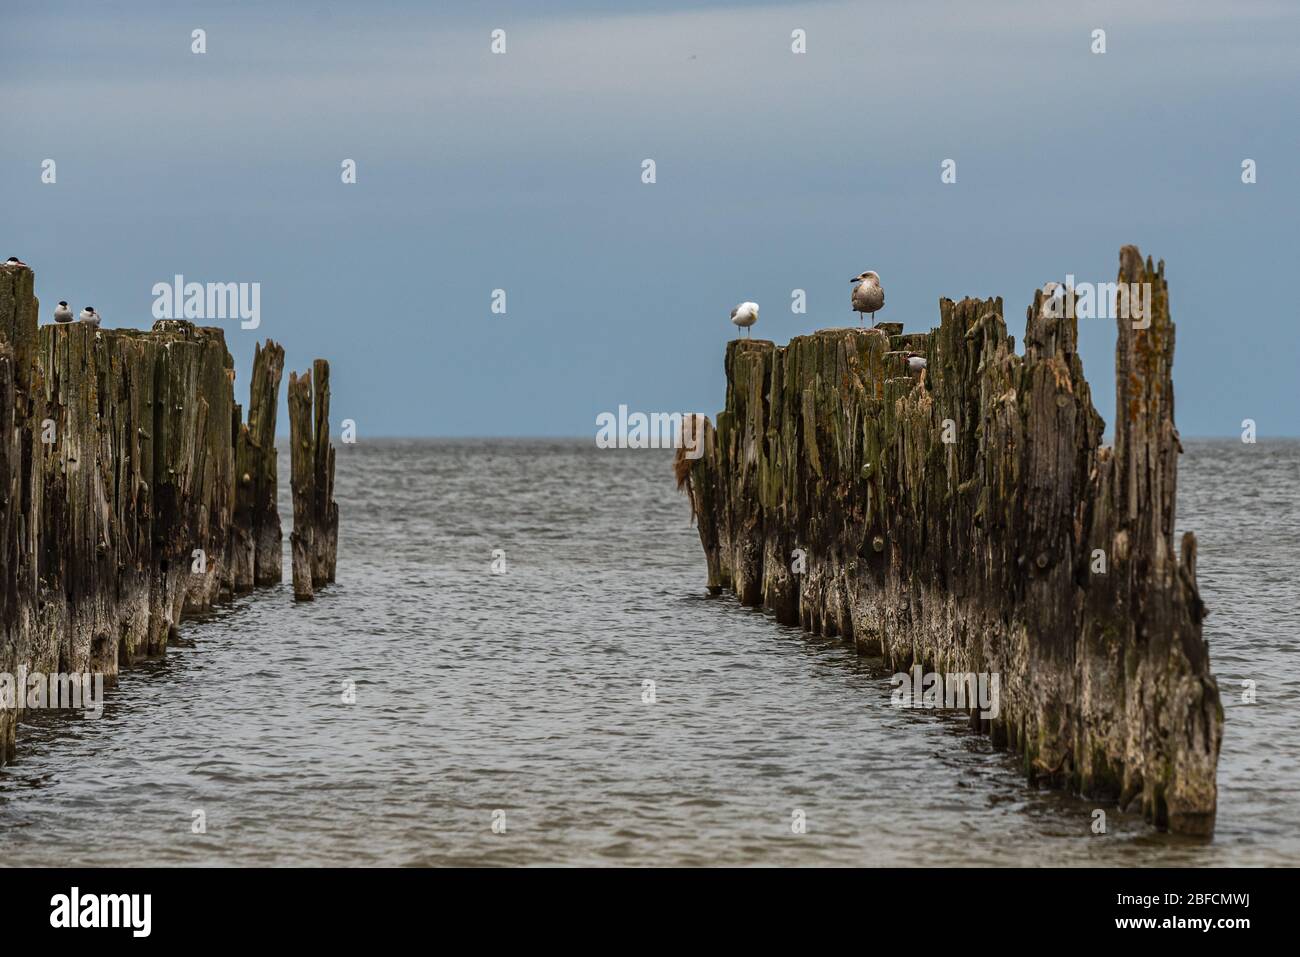 De vieilles amarres de bateaux sur les rives de la mer Baltique et des oiseaux de mer qui leur sont assis comme témoignage historique de la pêche passée Banque D'Images